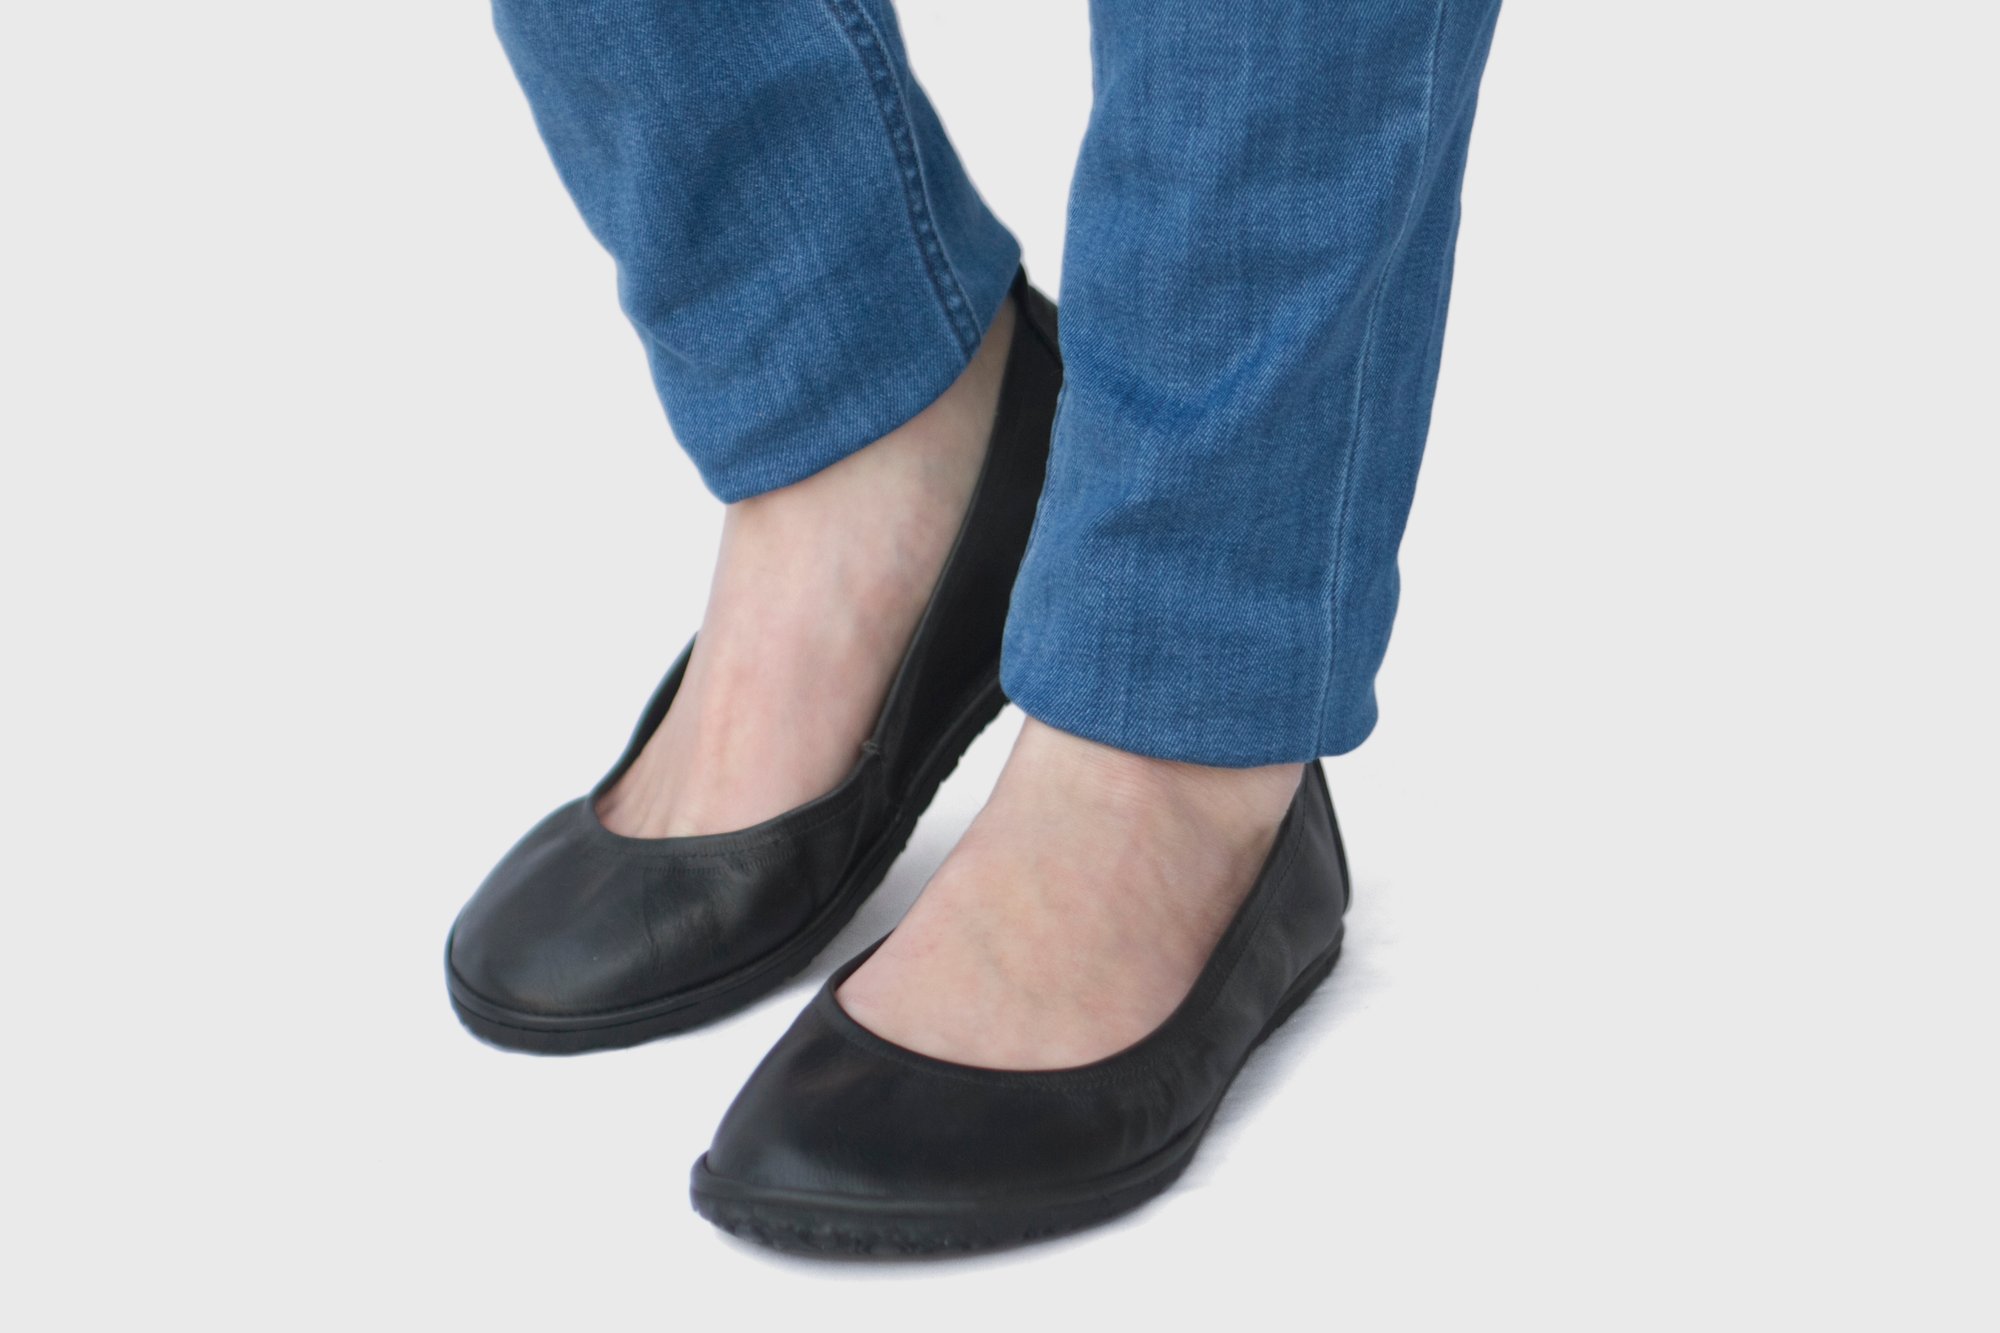 Veg-Tanned - Eko in Black Ballet flats | The Drifter Leather handmade shoes